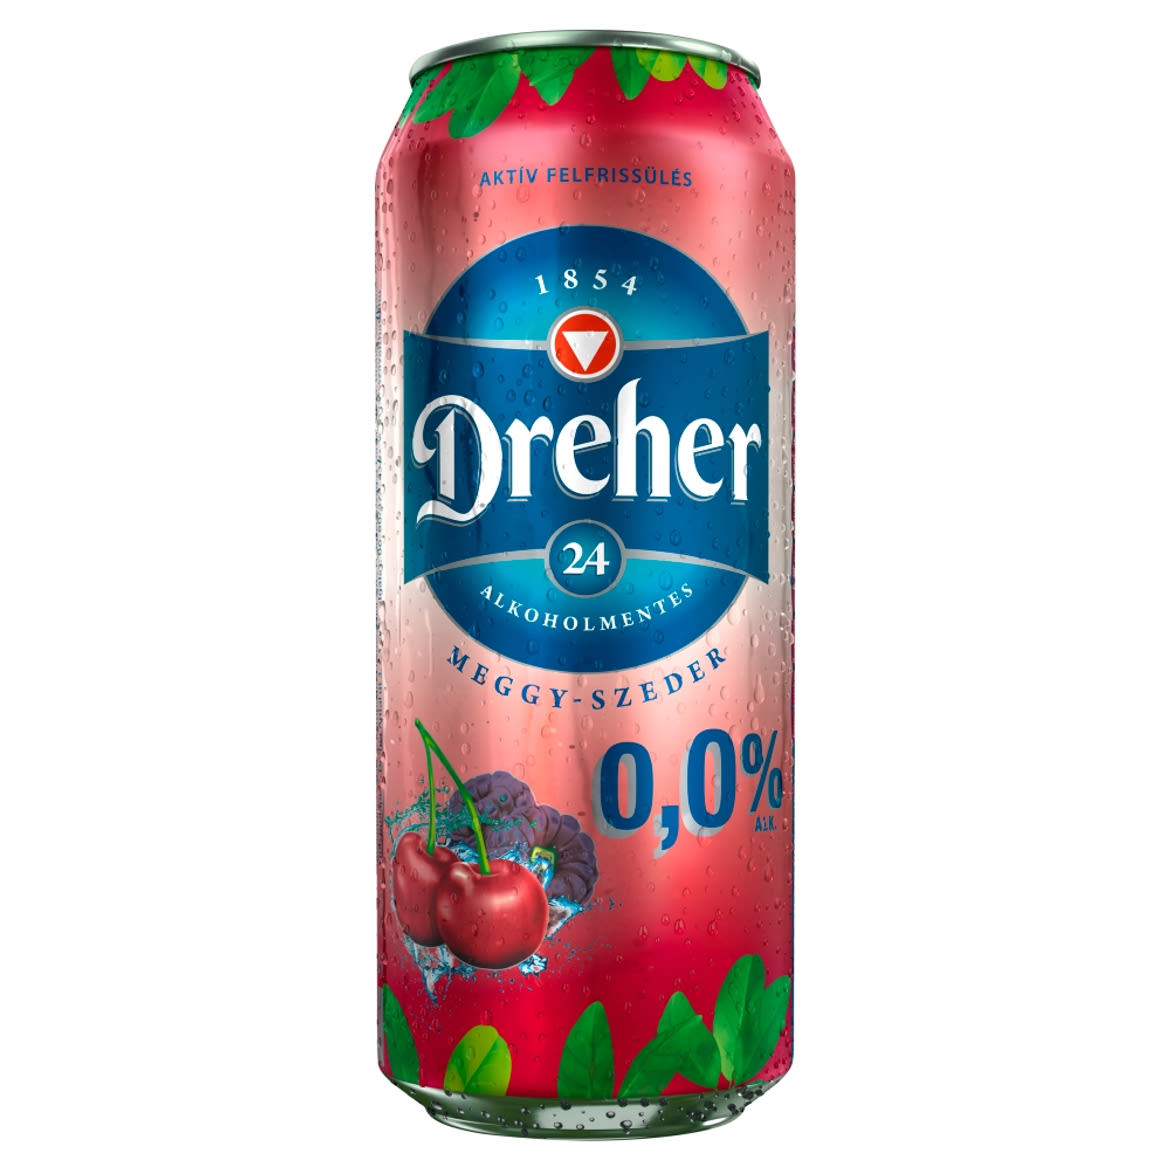 Dreher 24 meggy és szeder ízű ital és alkoholmentes világos sör keveréke